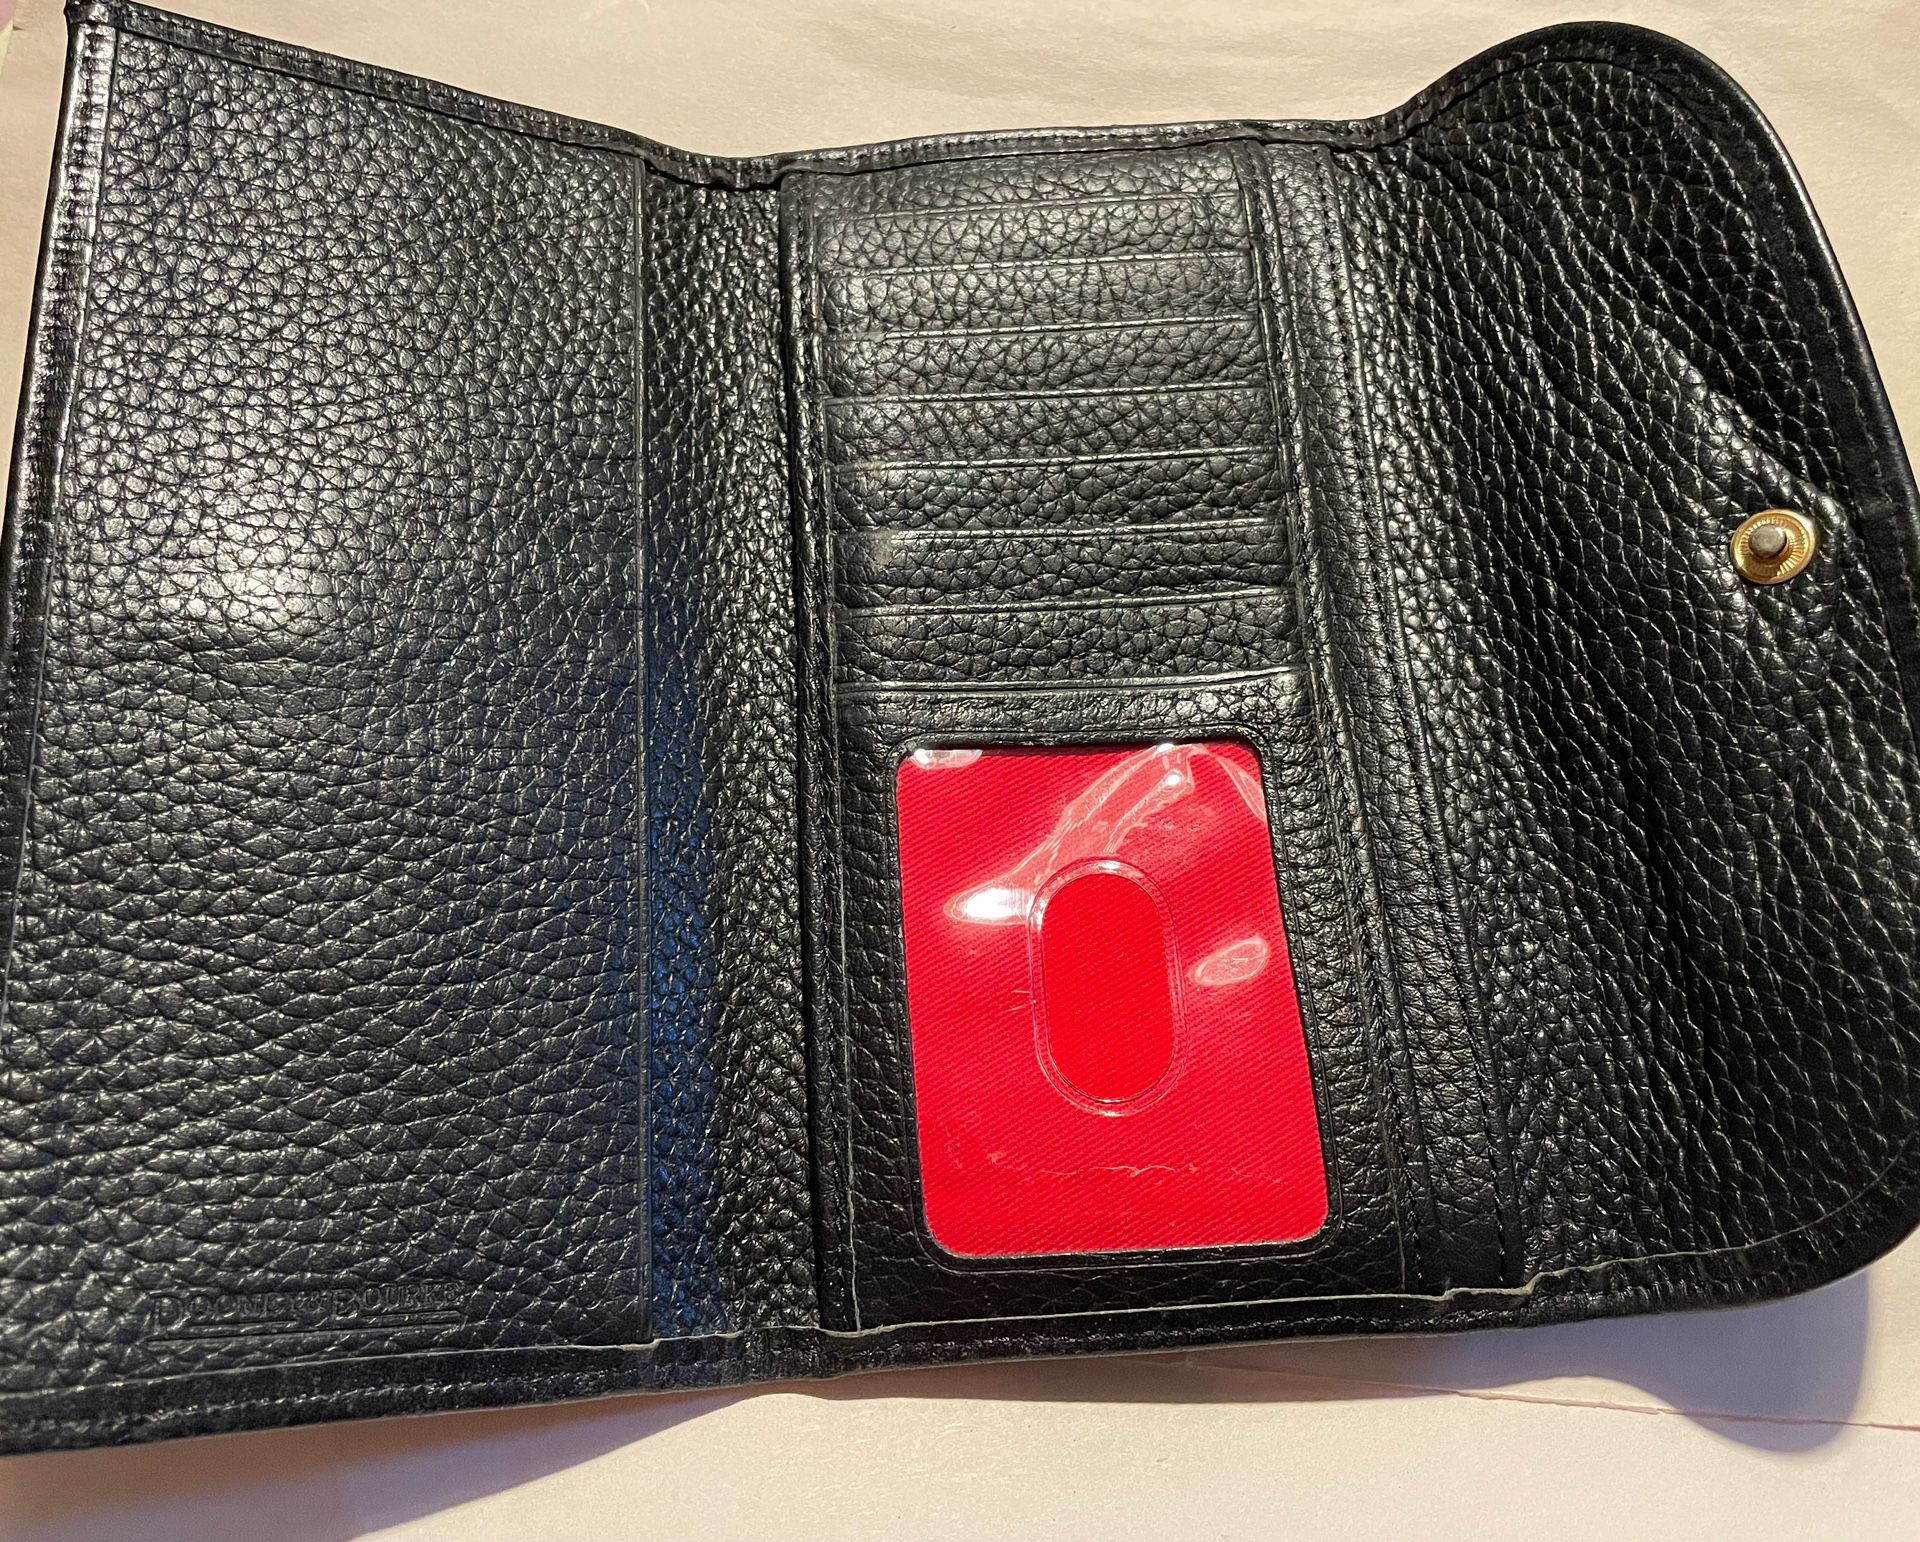 Dooney & Bourke Trifold, Black Leather Clutch Wallet